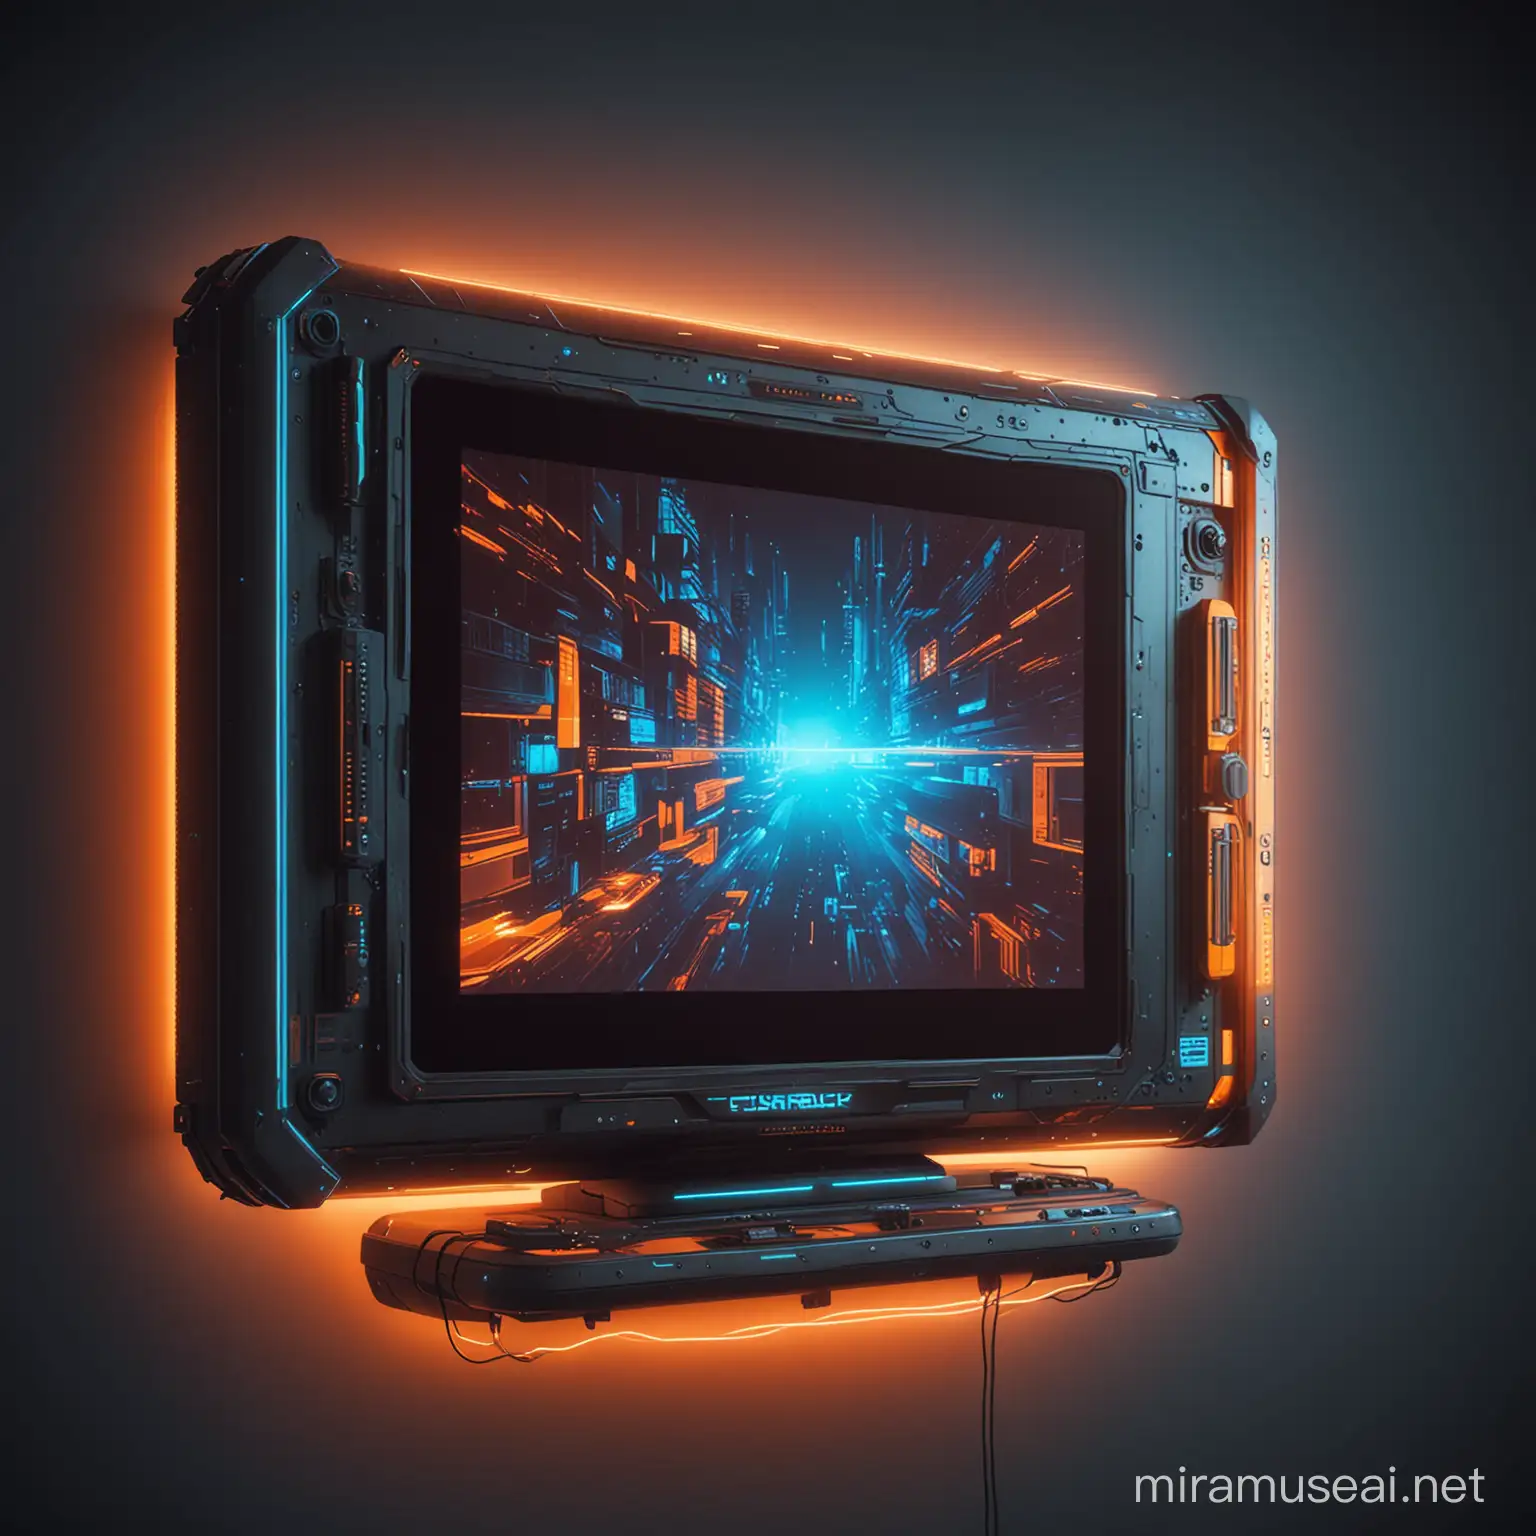 Futuristic Cyberpunk Big Screen TV Floating in Orange and Blue Hue